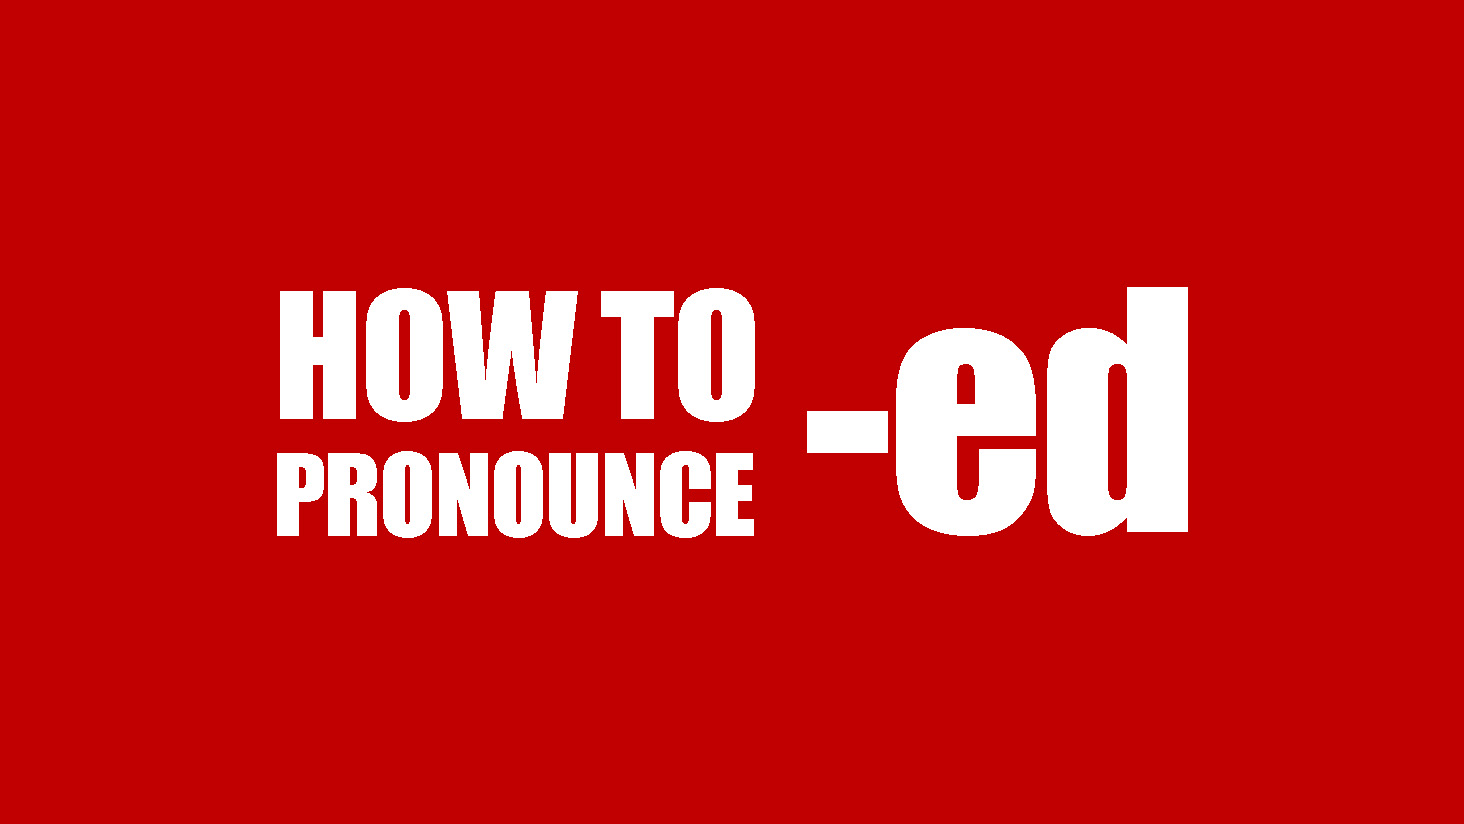 Cách phát âm ed trong tiếng Anh - Mẹo học nhanh, nhớ lâu